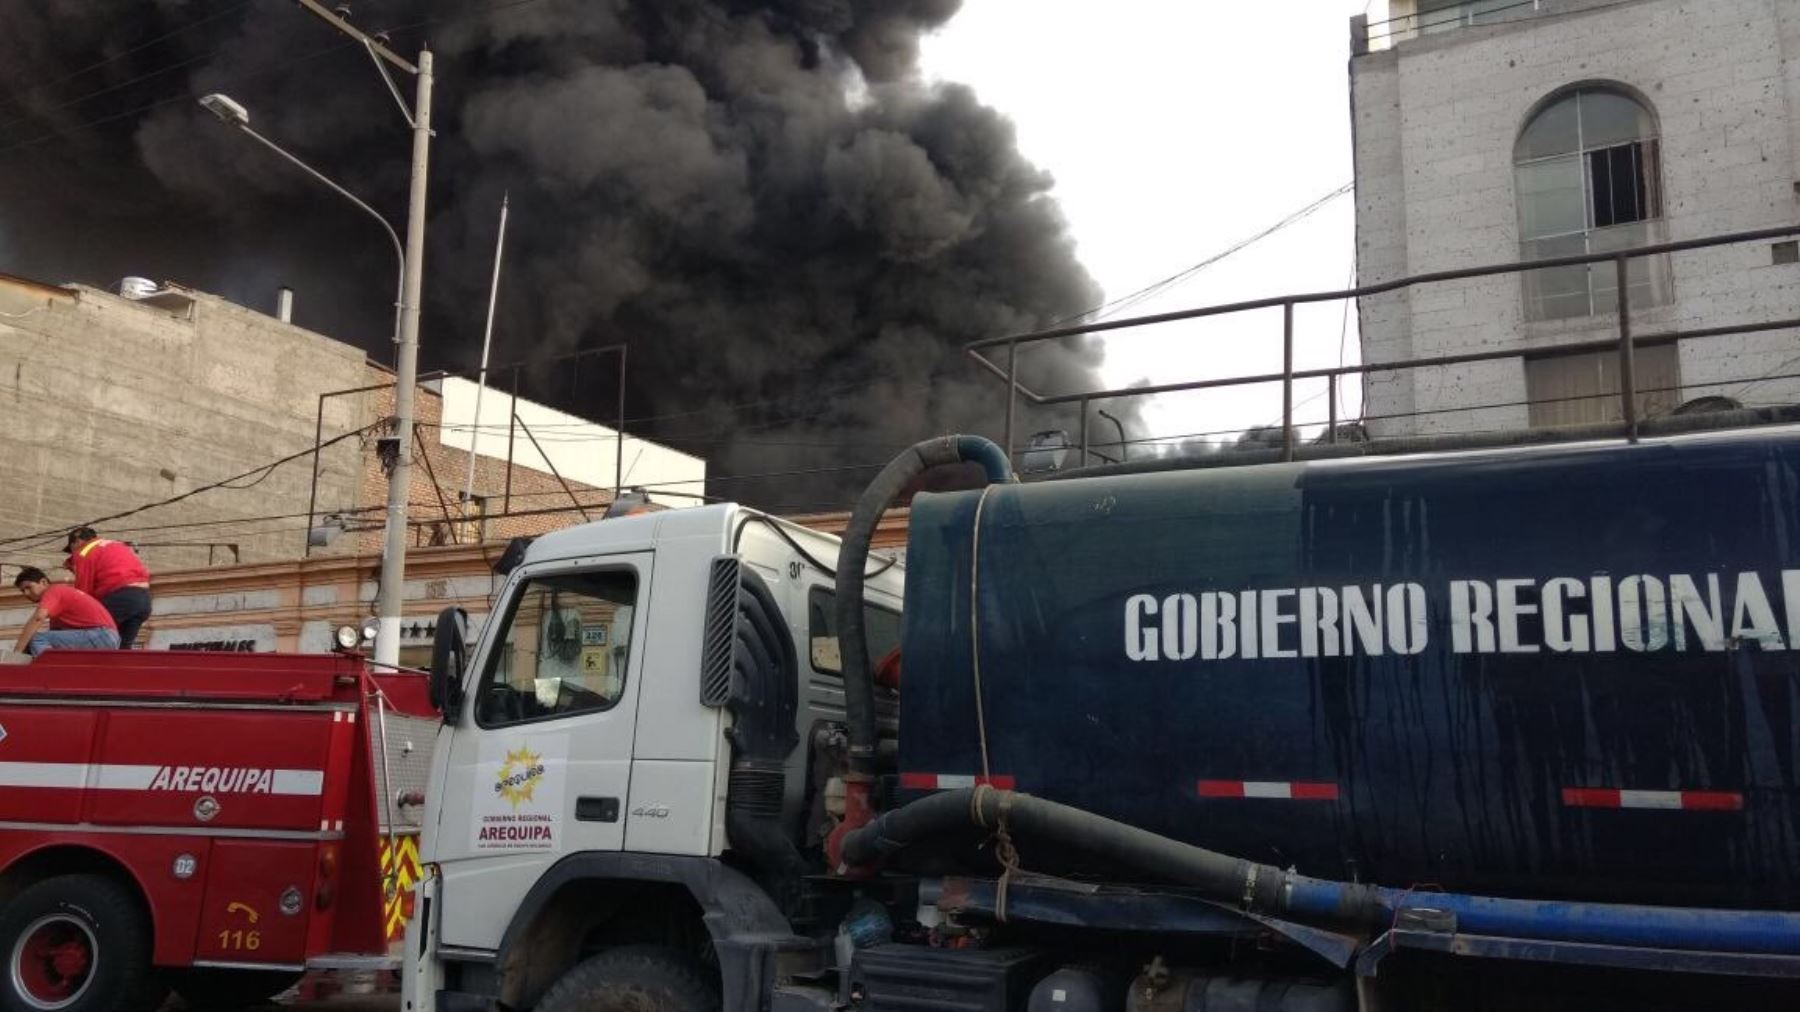 Gobierno regional de Arequipa apoya con cisterna para apagar incendio en calle San Camilo,cerca de la plaza de Armas de la ciudad.